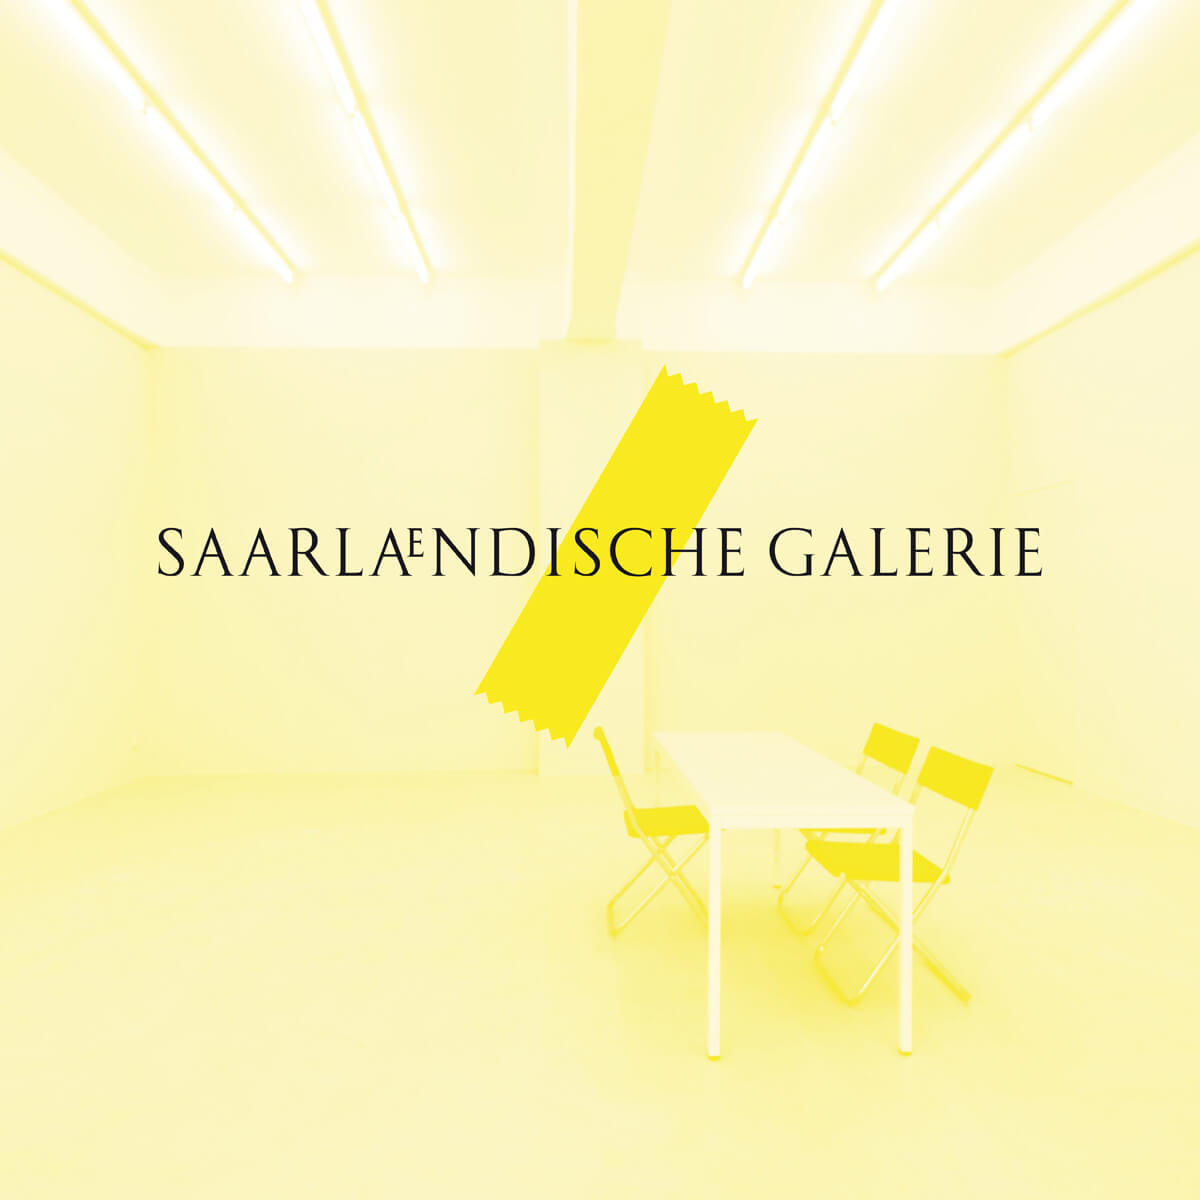 (c) Saarlaendische-galerie.eu